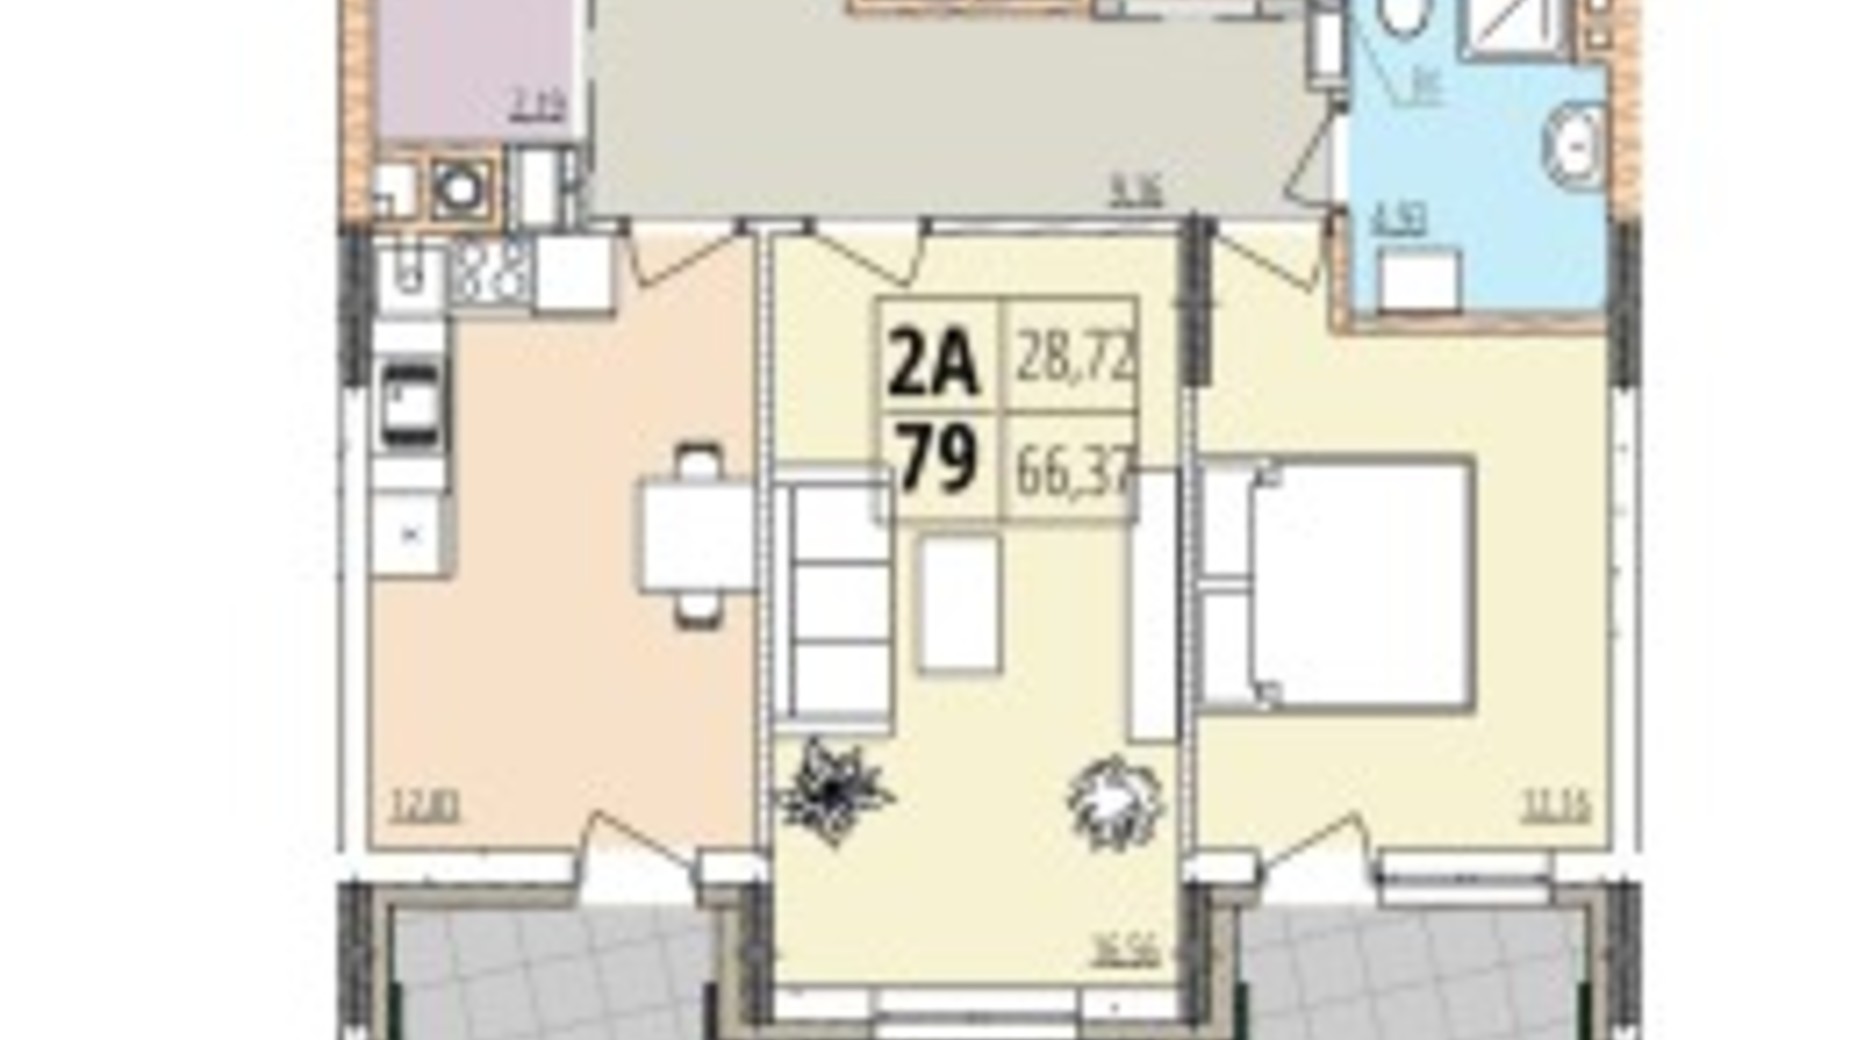 Планировка 2-комнатной квартиры в ЖК Кельце 66.37 м², фото 694184